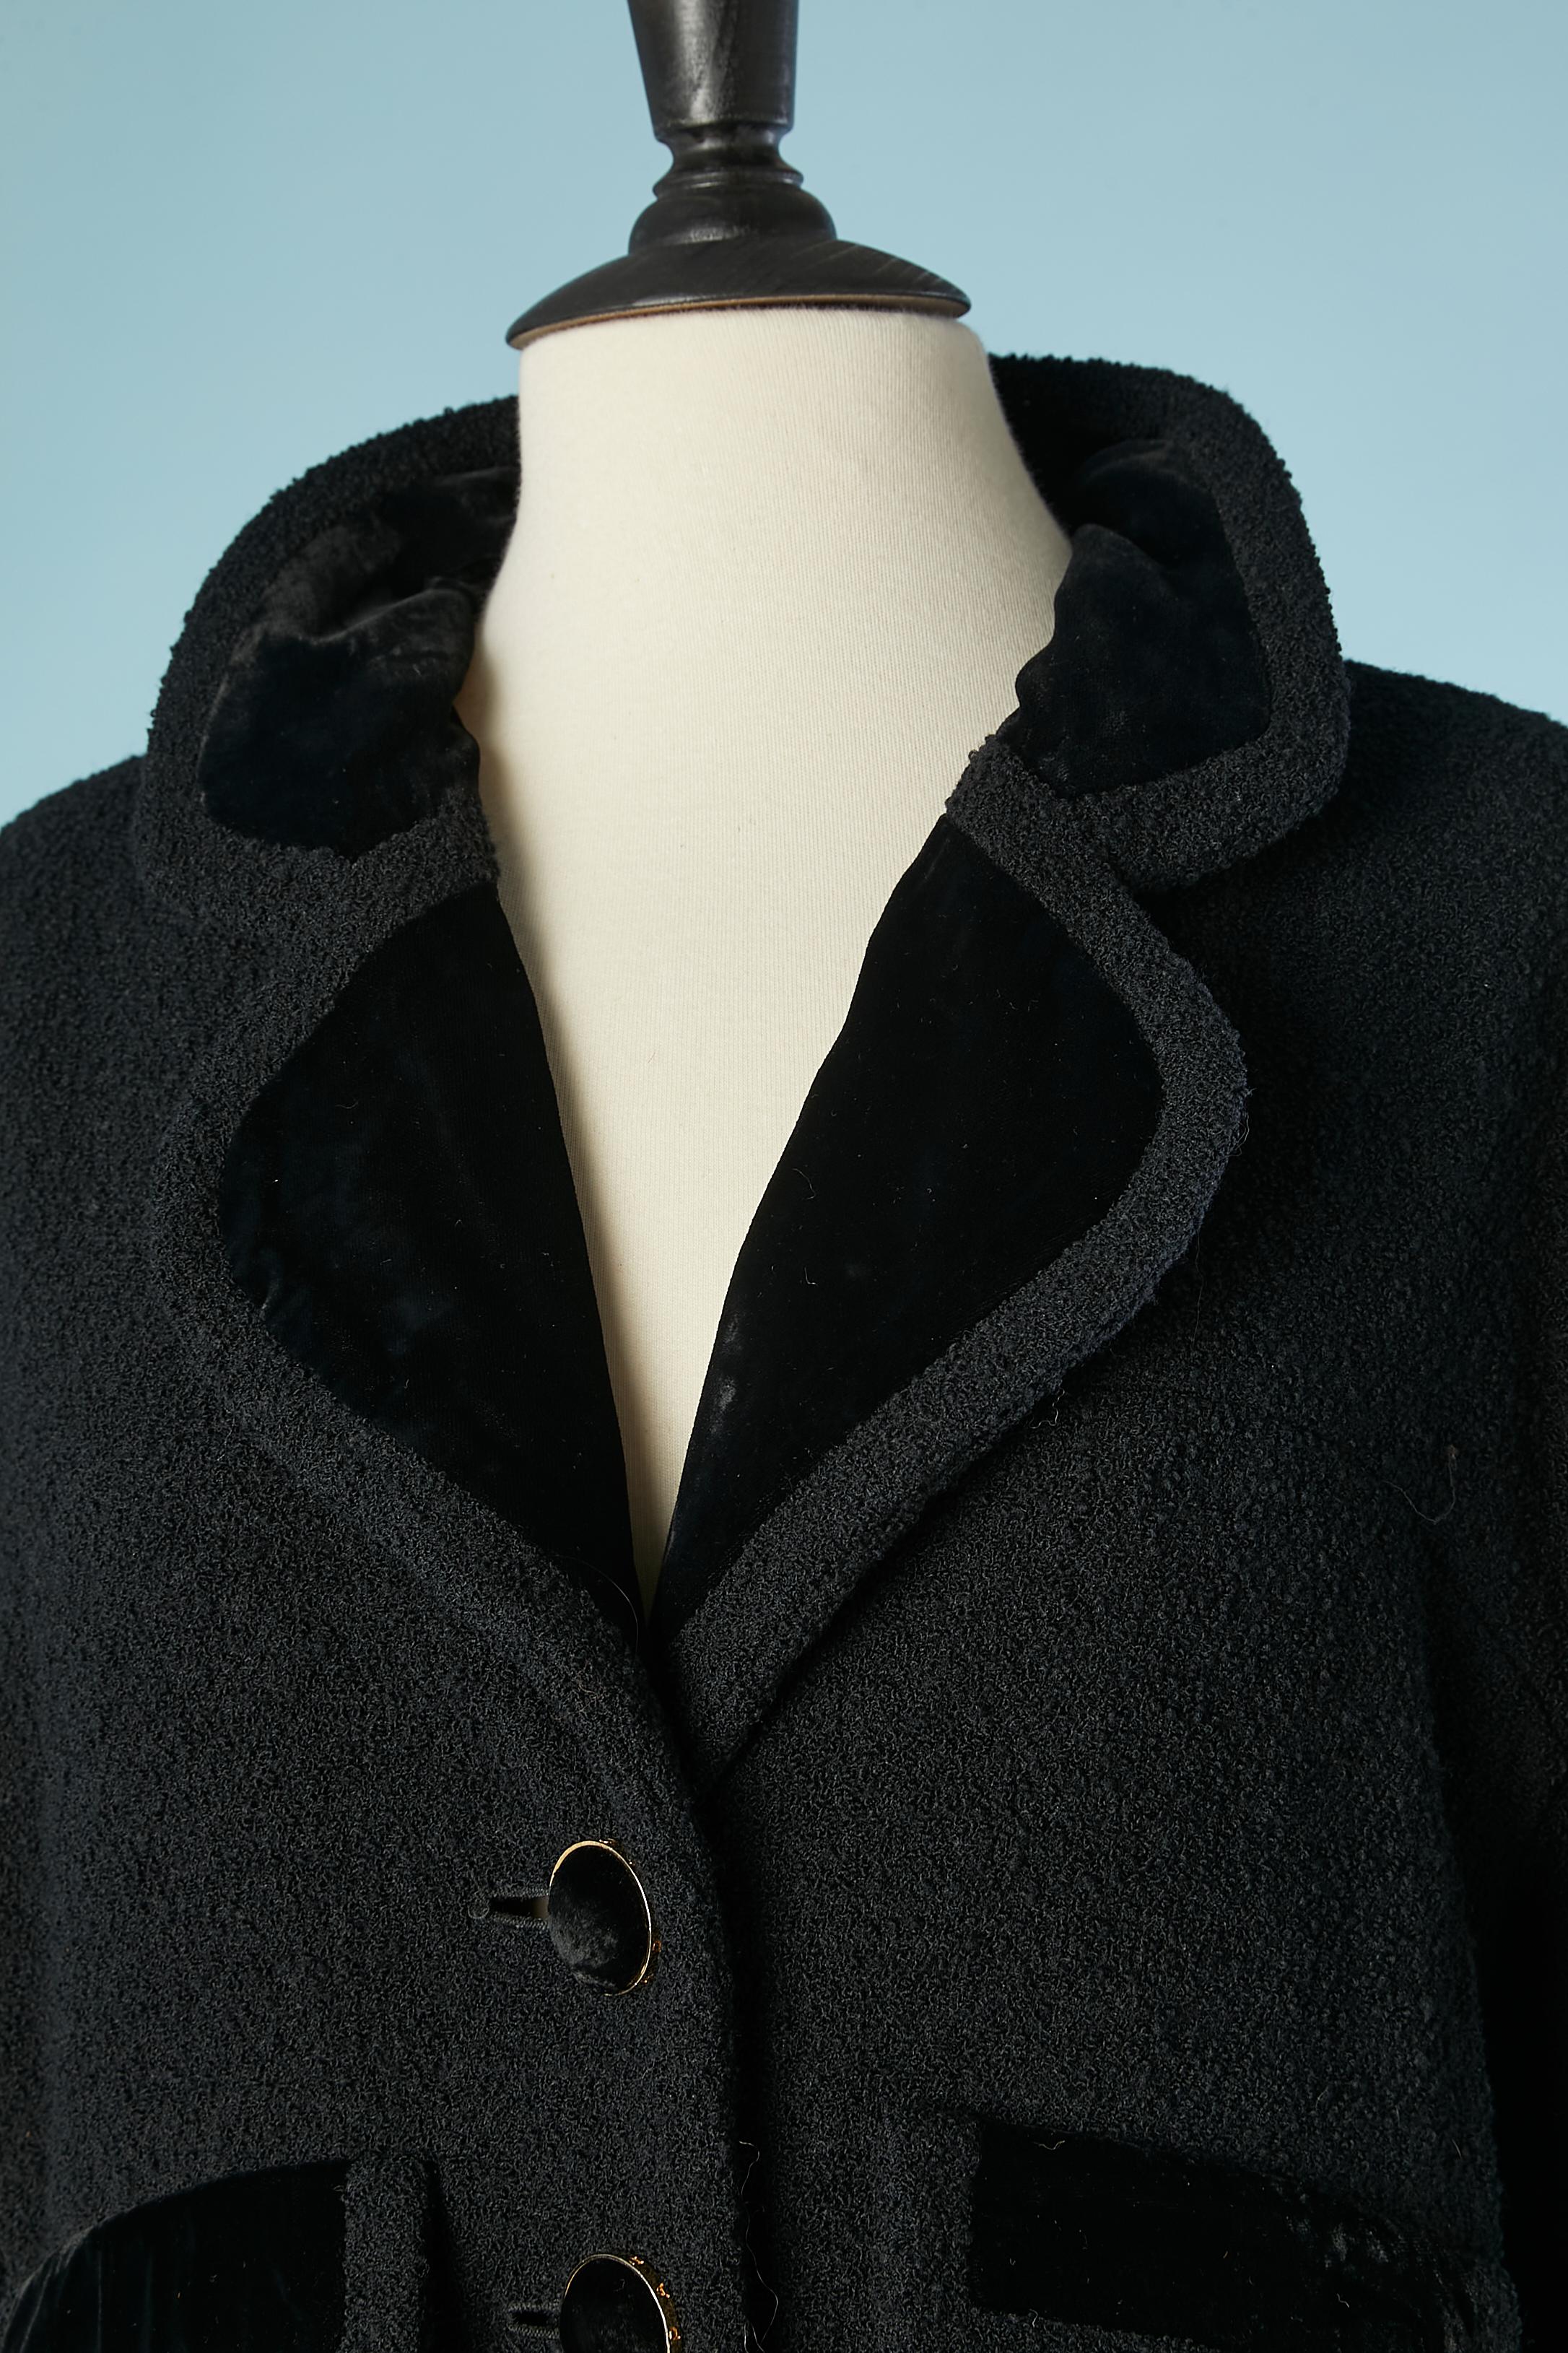 Manteau en laine noire avec détails en velours de soie noire. Boutons de marque en métal doré et en velours noir ( sur le côté des boutons). Raglan. Des manchettes. Doublure en soie de la marque. 
TAILLE 44 (Fr) 14 (Us) L